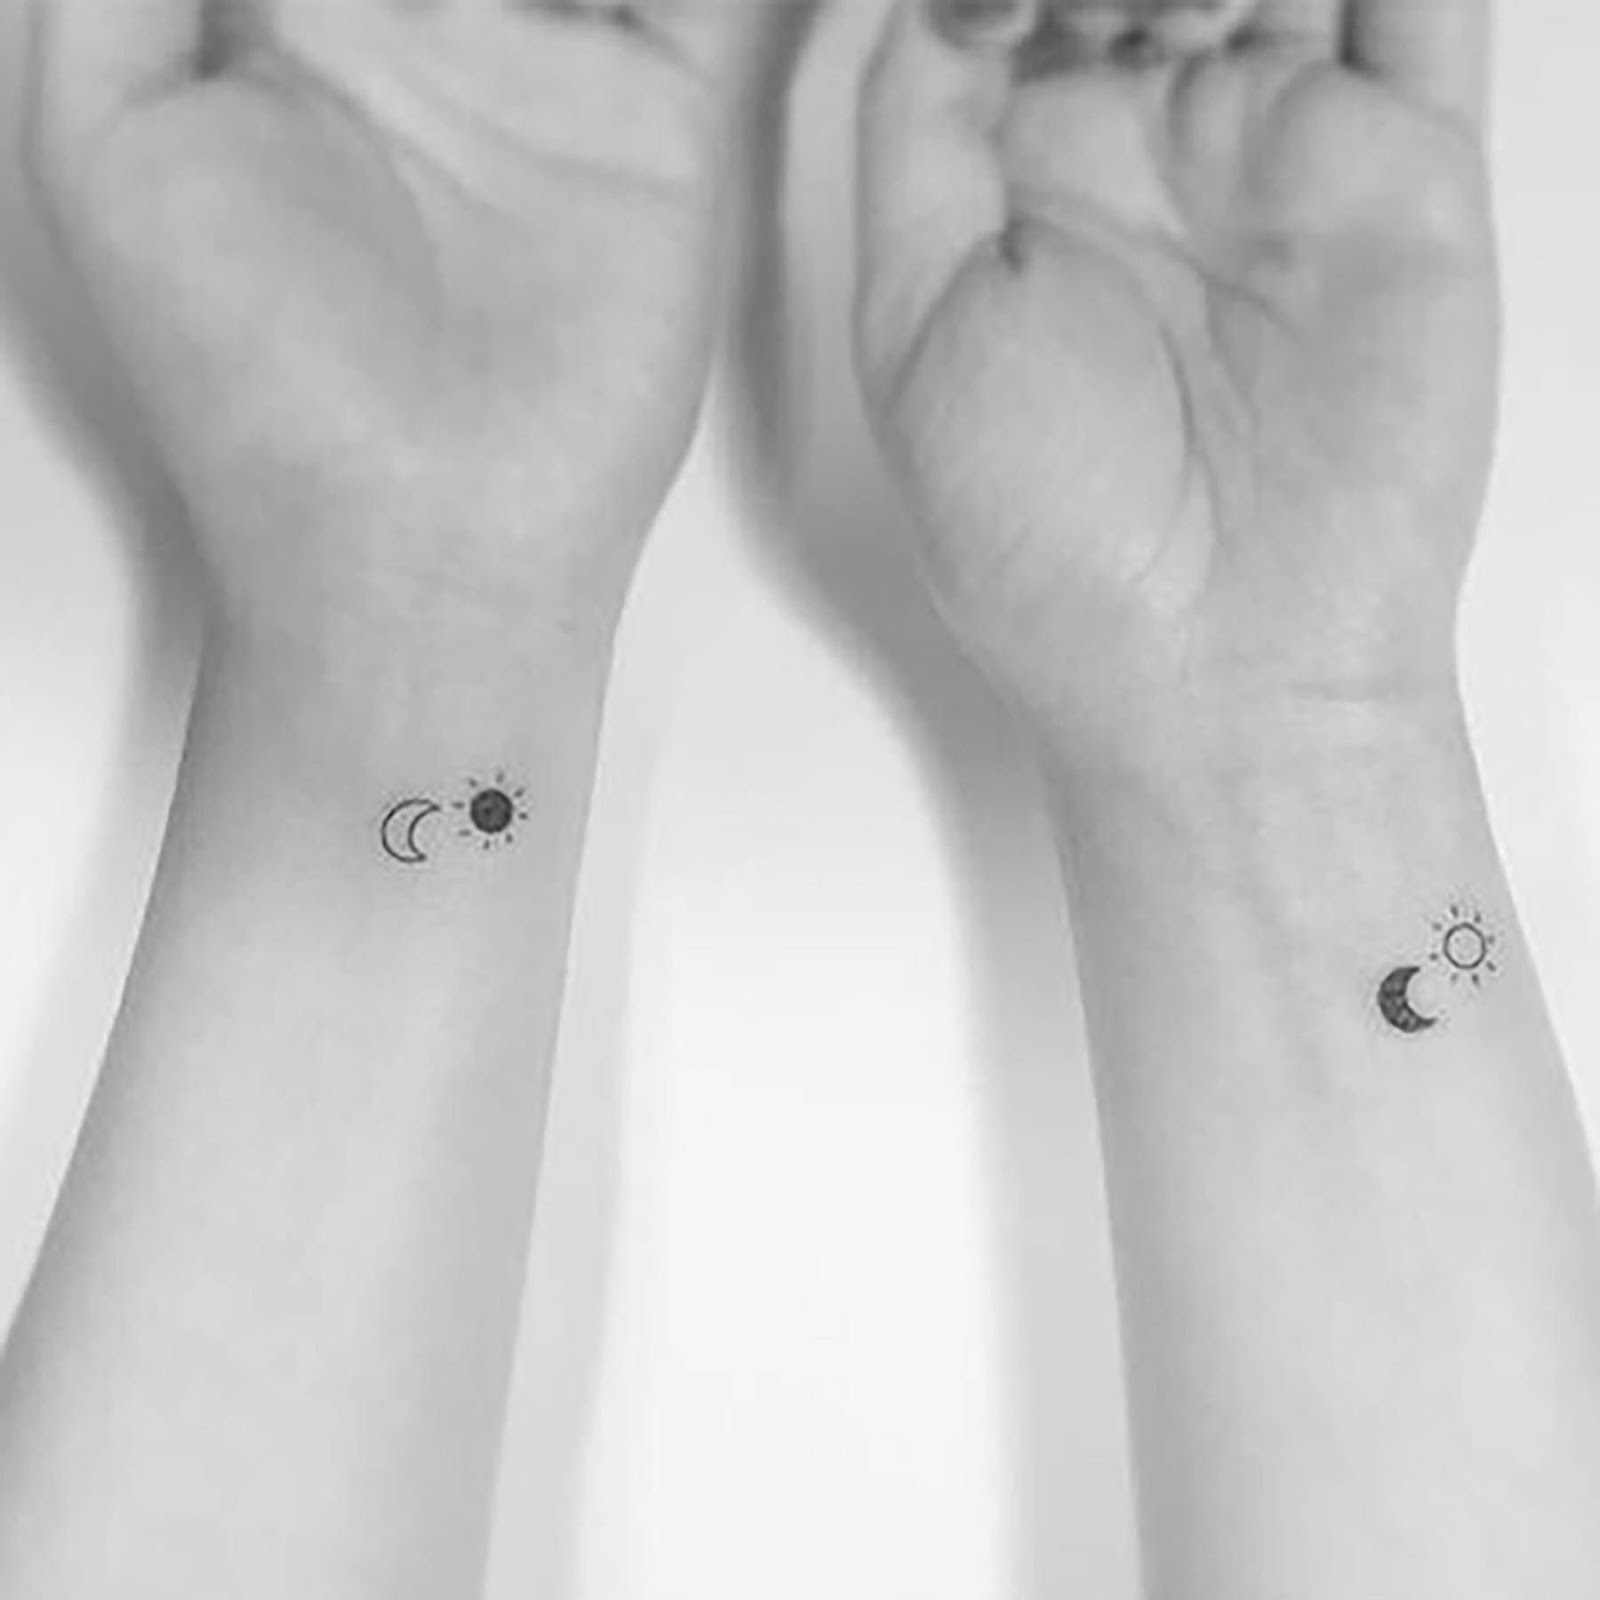 Girl Best Friend Matching Tattoos (2)